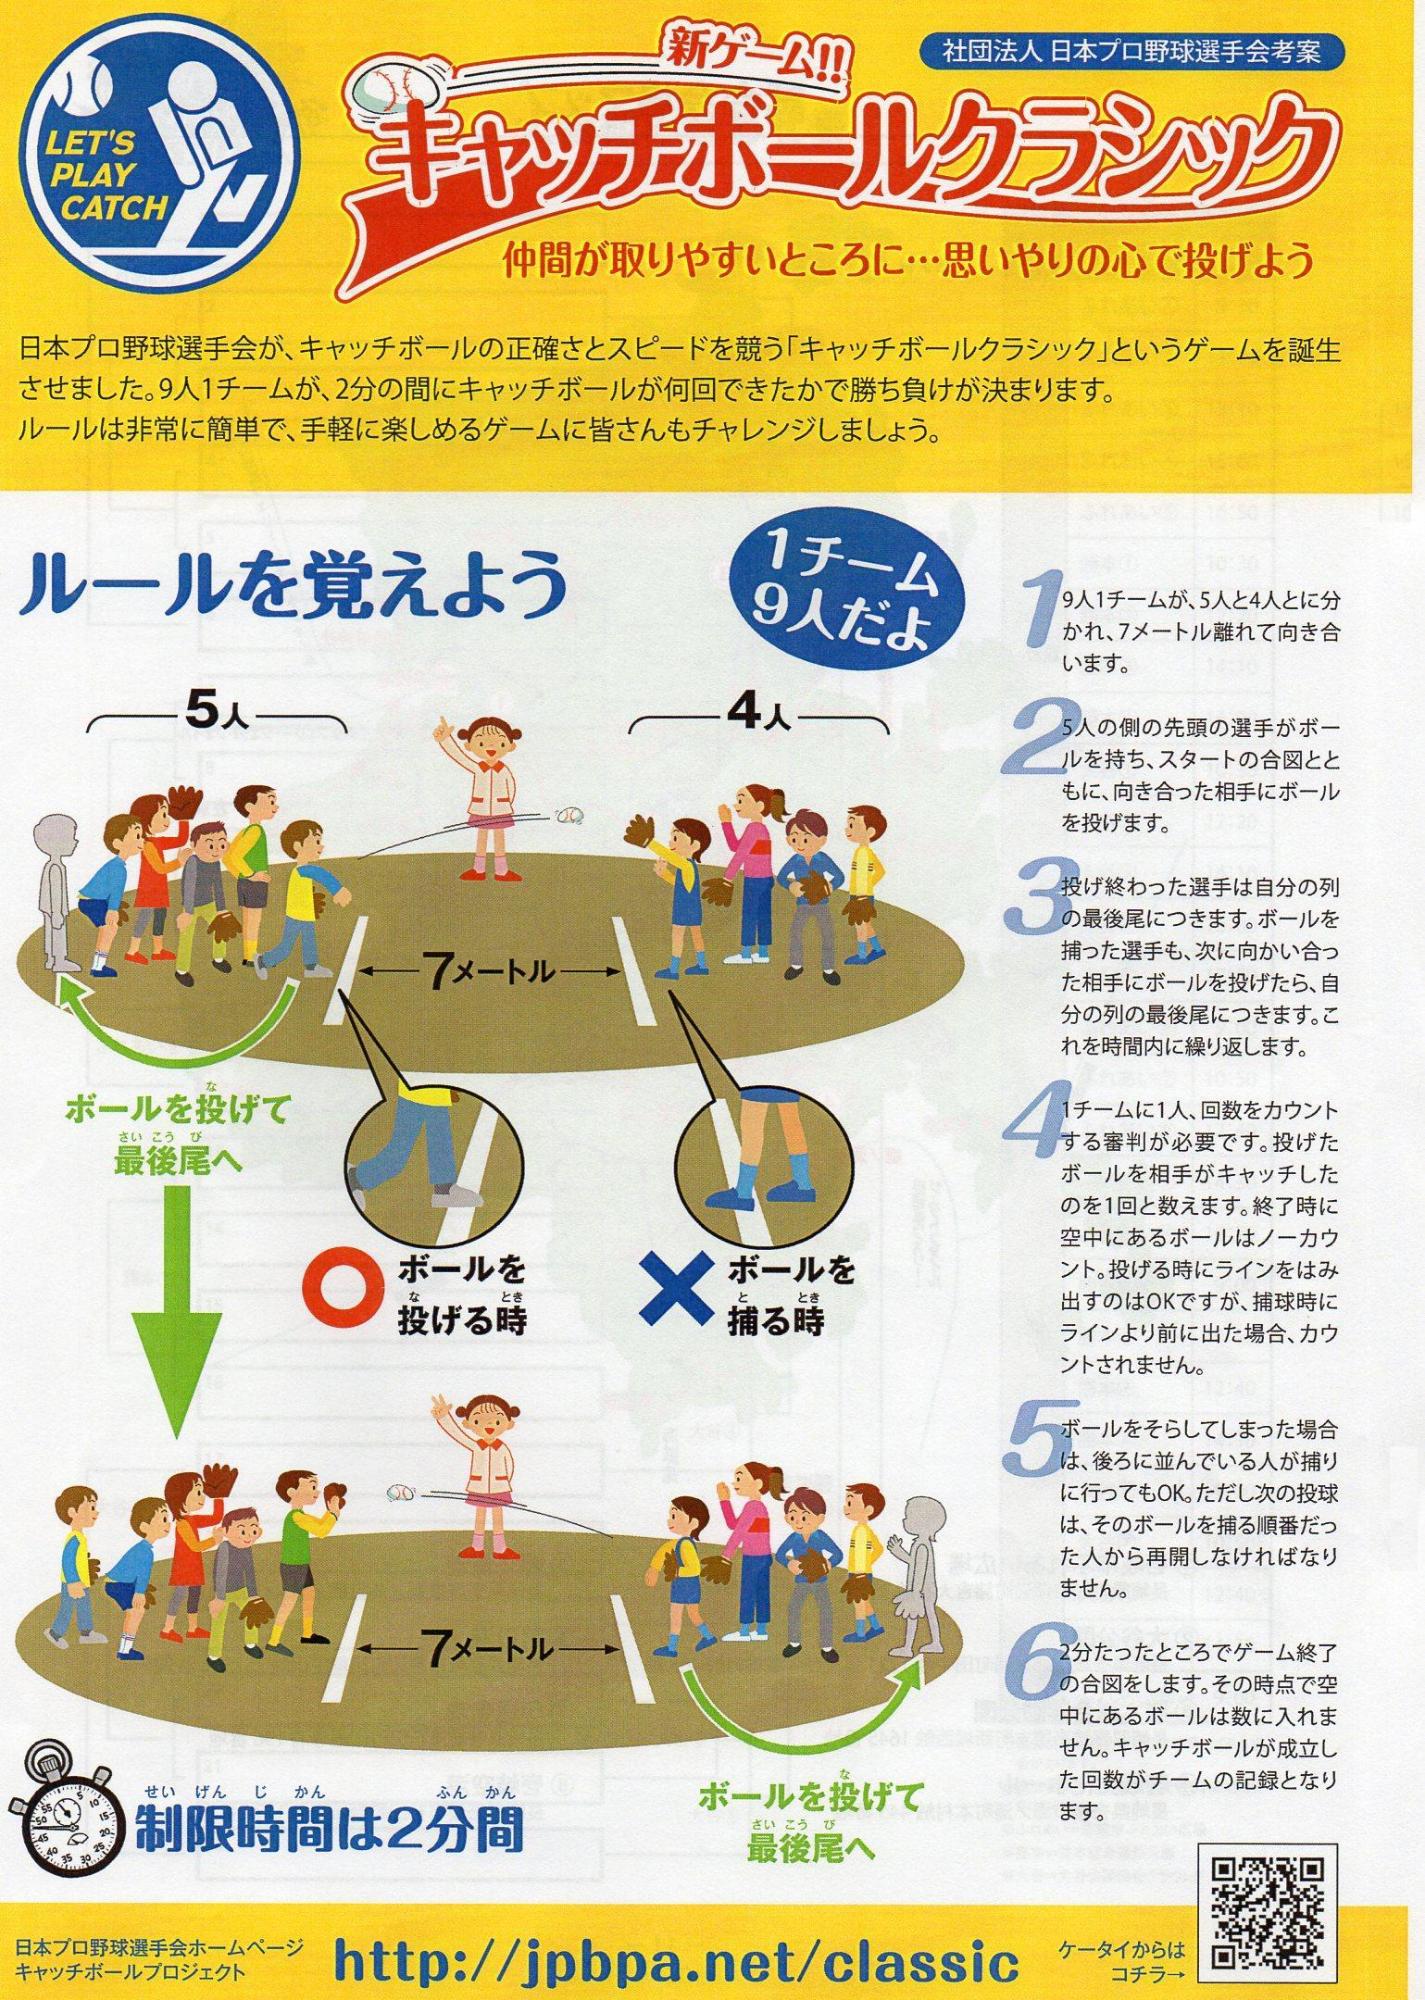 【野球】日本人の野球離れ　稲葉監督「人口に対して約３倍のスピードで減っています」★2	YouTube動画>7本 ->画像>95枚 